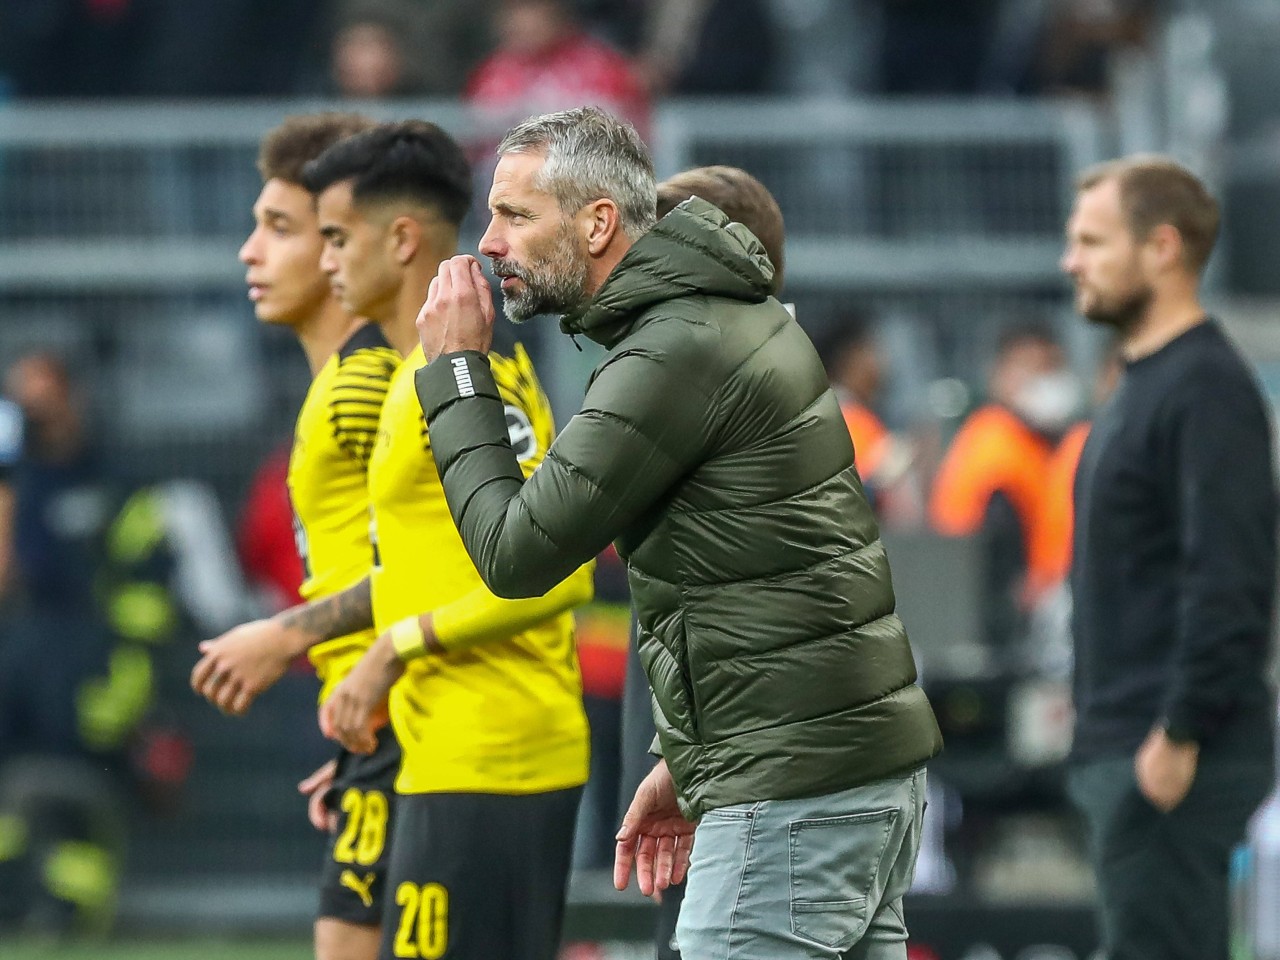 Auch Borussia Dortmund plagen Coronasorgen. Findet jetzt ein Umdenken statt?